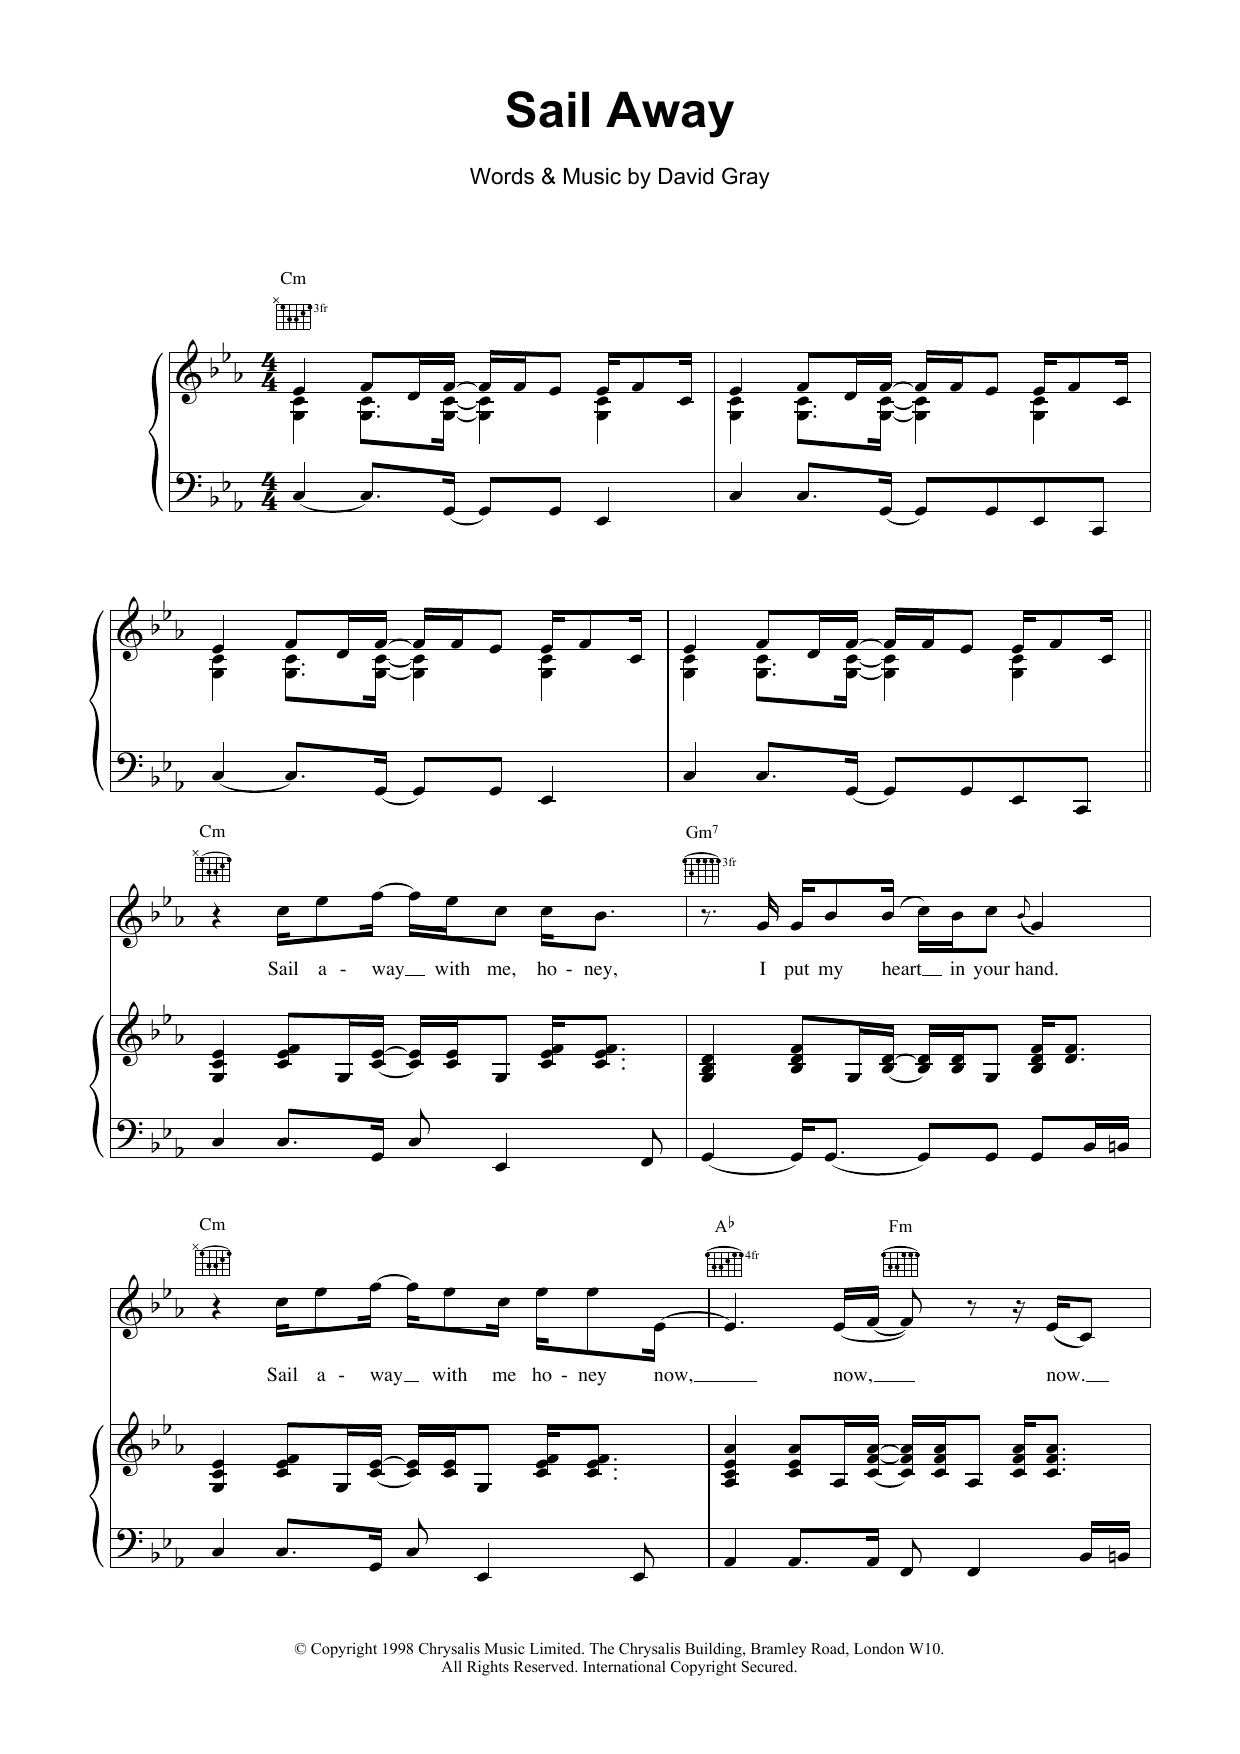 David Gray Sail Away Sheet Music Notes & Chords for Lyrics & Piano Chords - Download or Print PDF